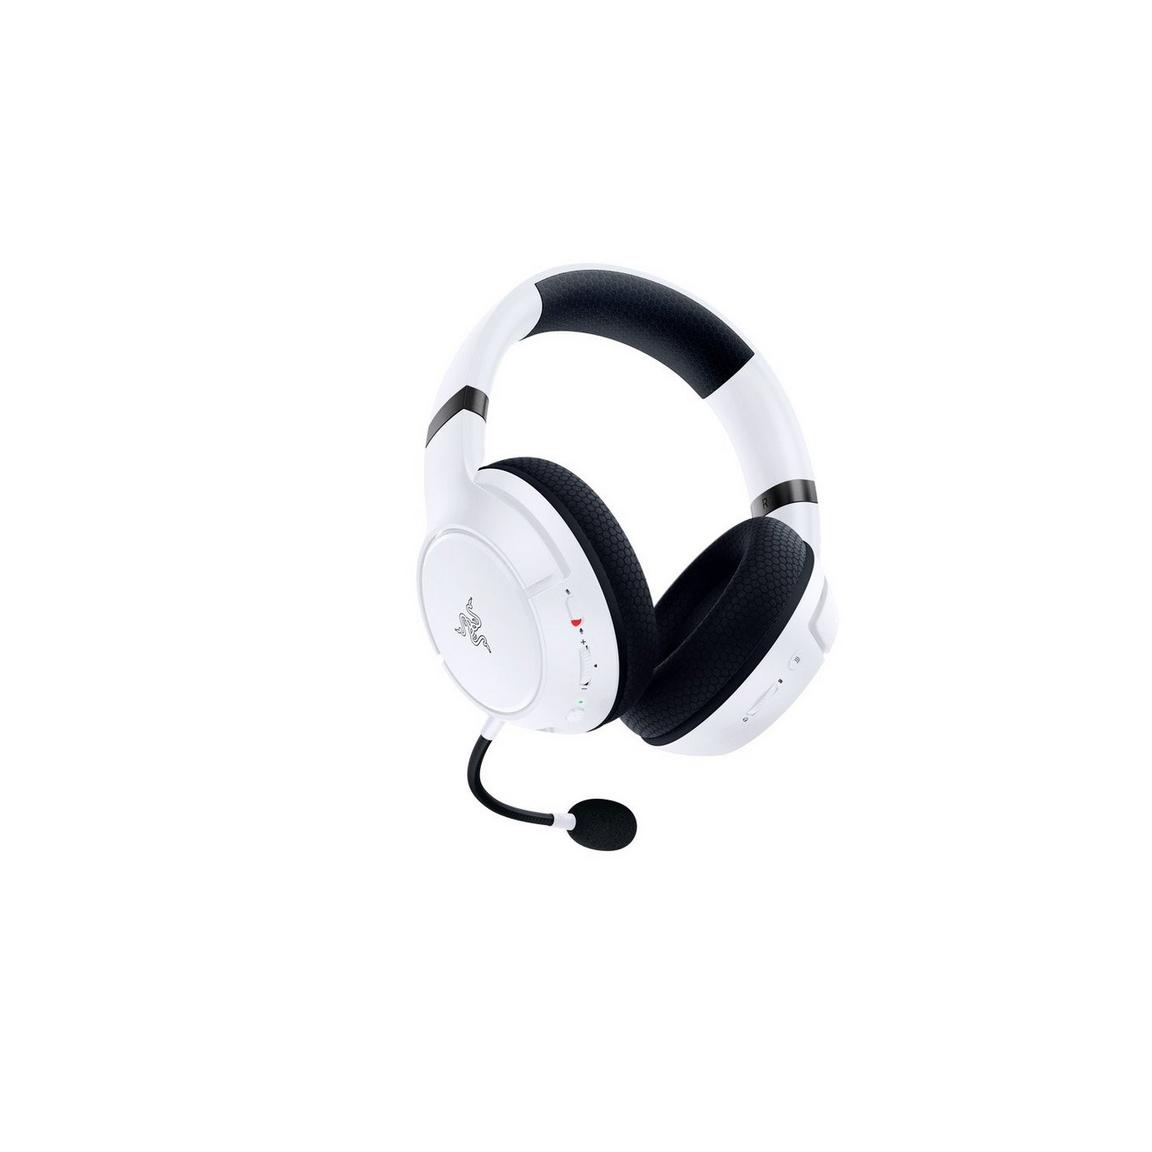 Razer Kaira Wireless Gaming Headset for Xbox Series X|S, Xbox One - White (New)